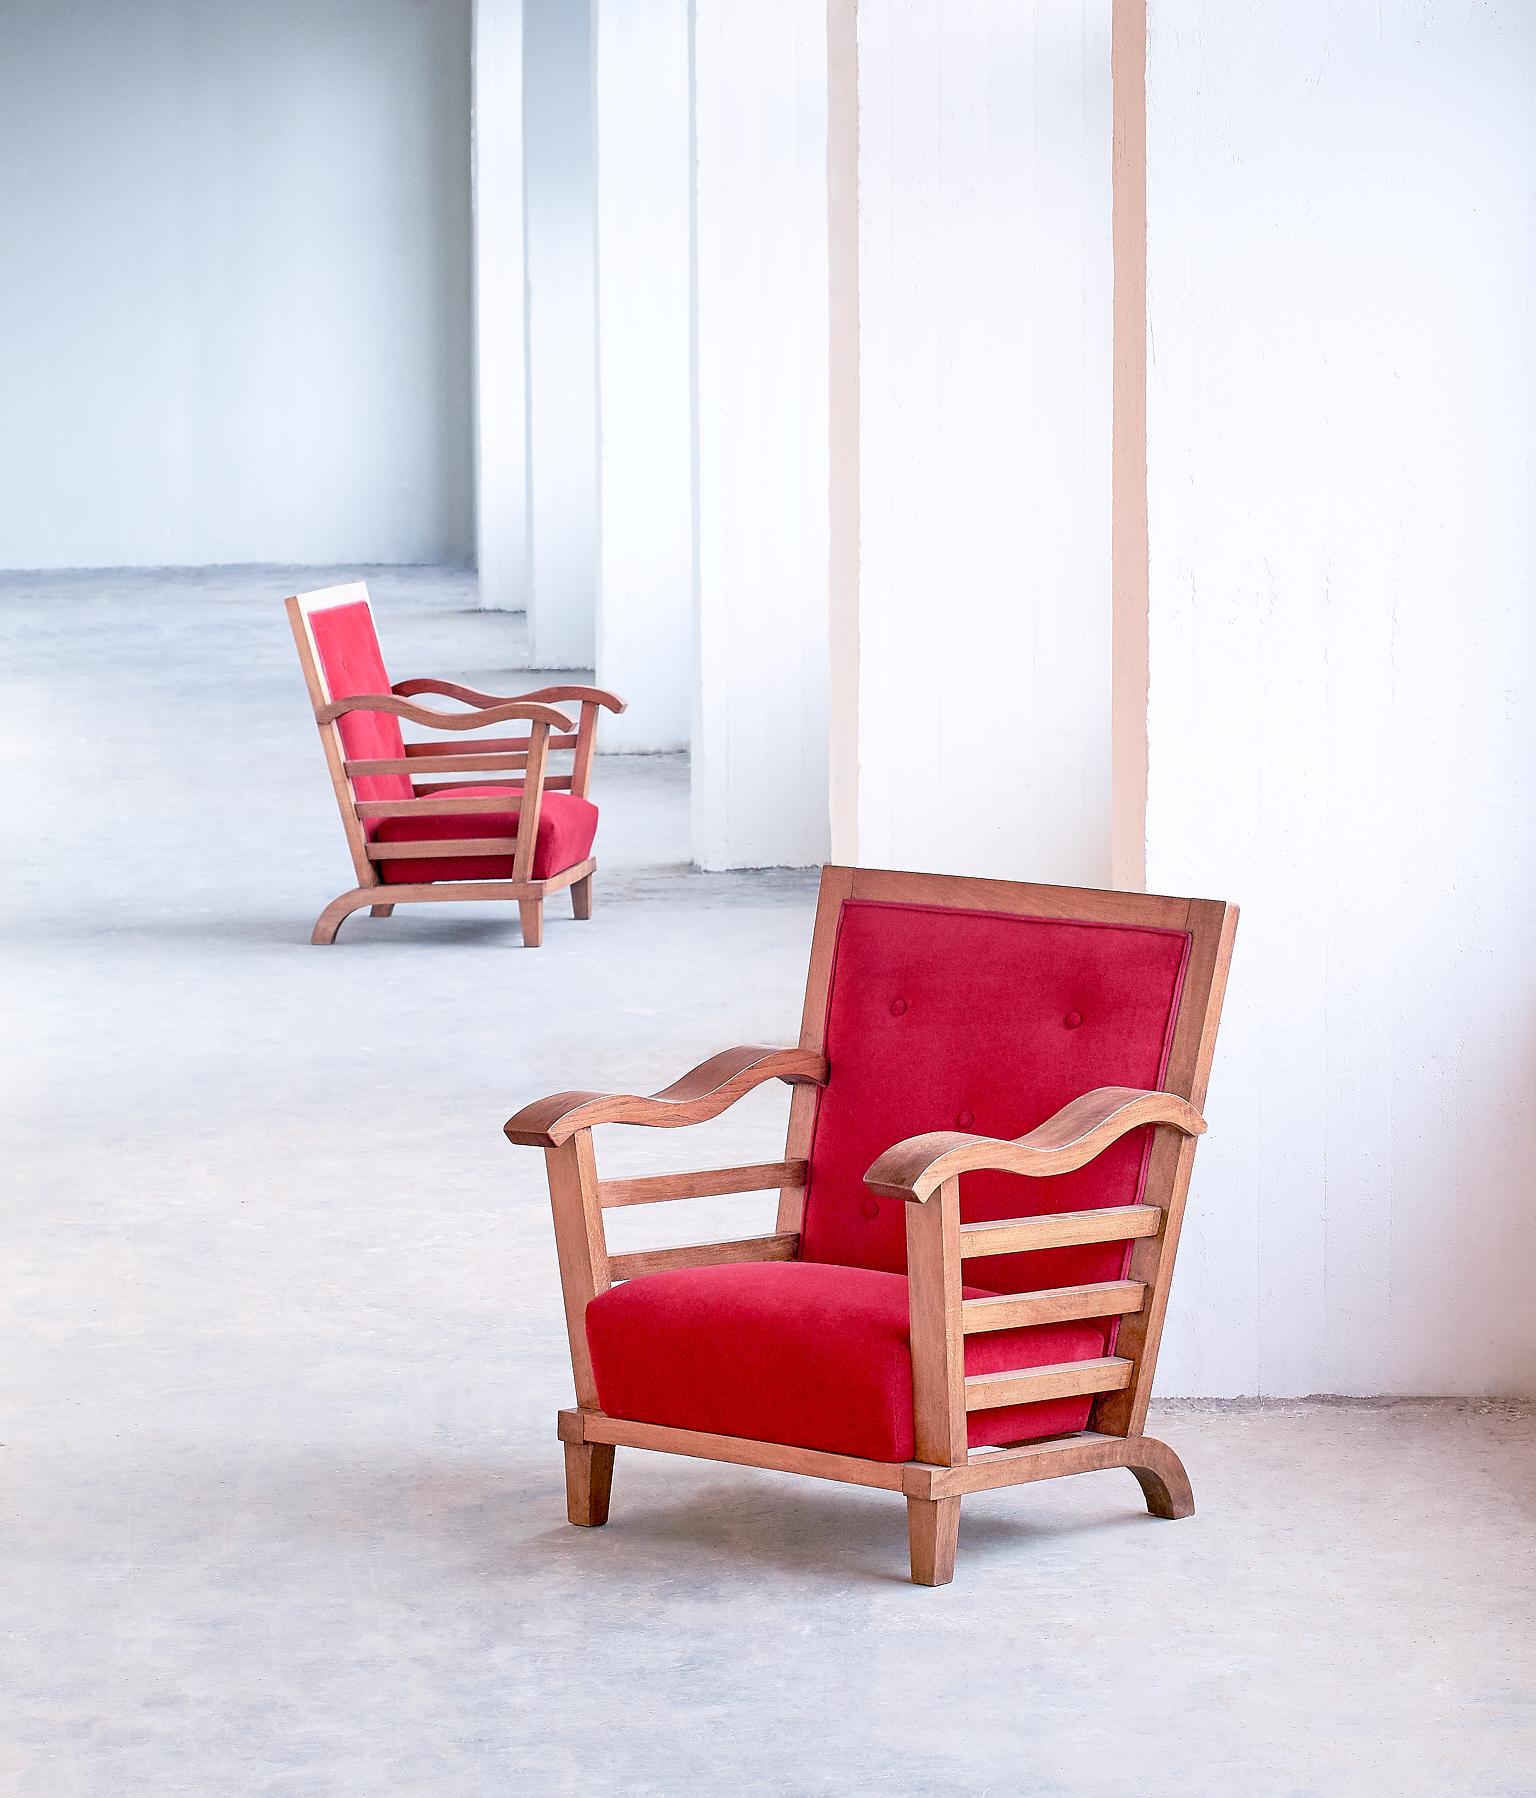 Ces fauteuils étonnants ont été conçus par Marguerite Dubuisson en 1947. Dubuisson était un artiste français travaillant principalement dans le domaine du design textile. Cependant, à la fin des années 1940, elle a conçu quelques intérieurs, dont